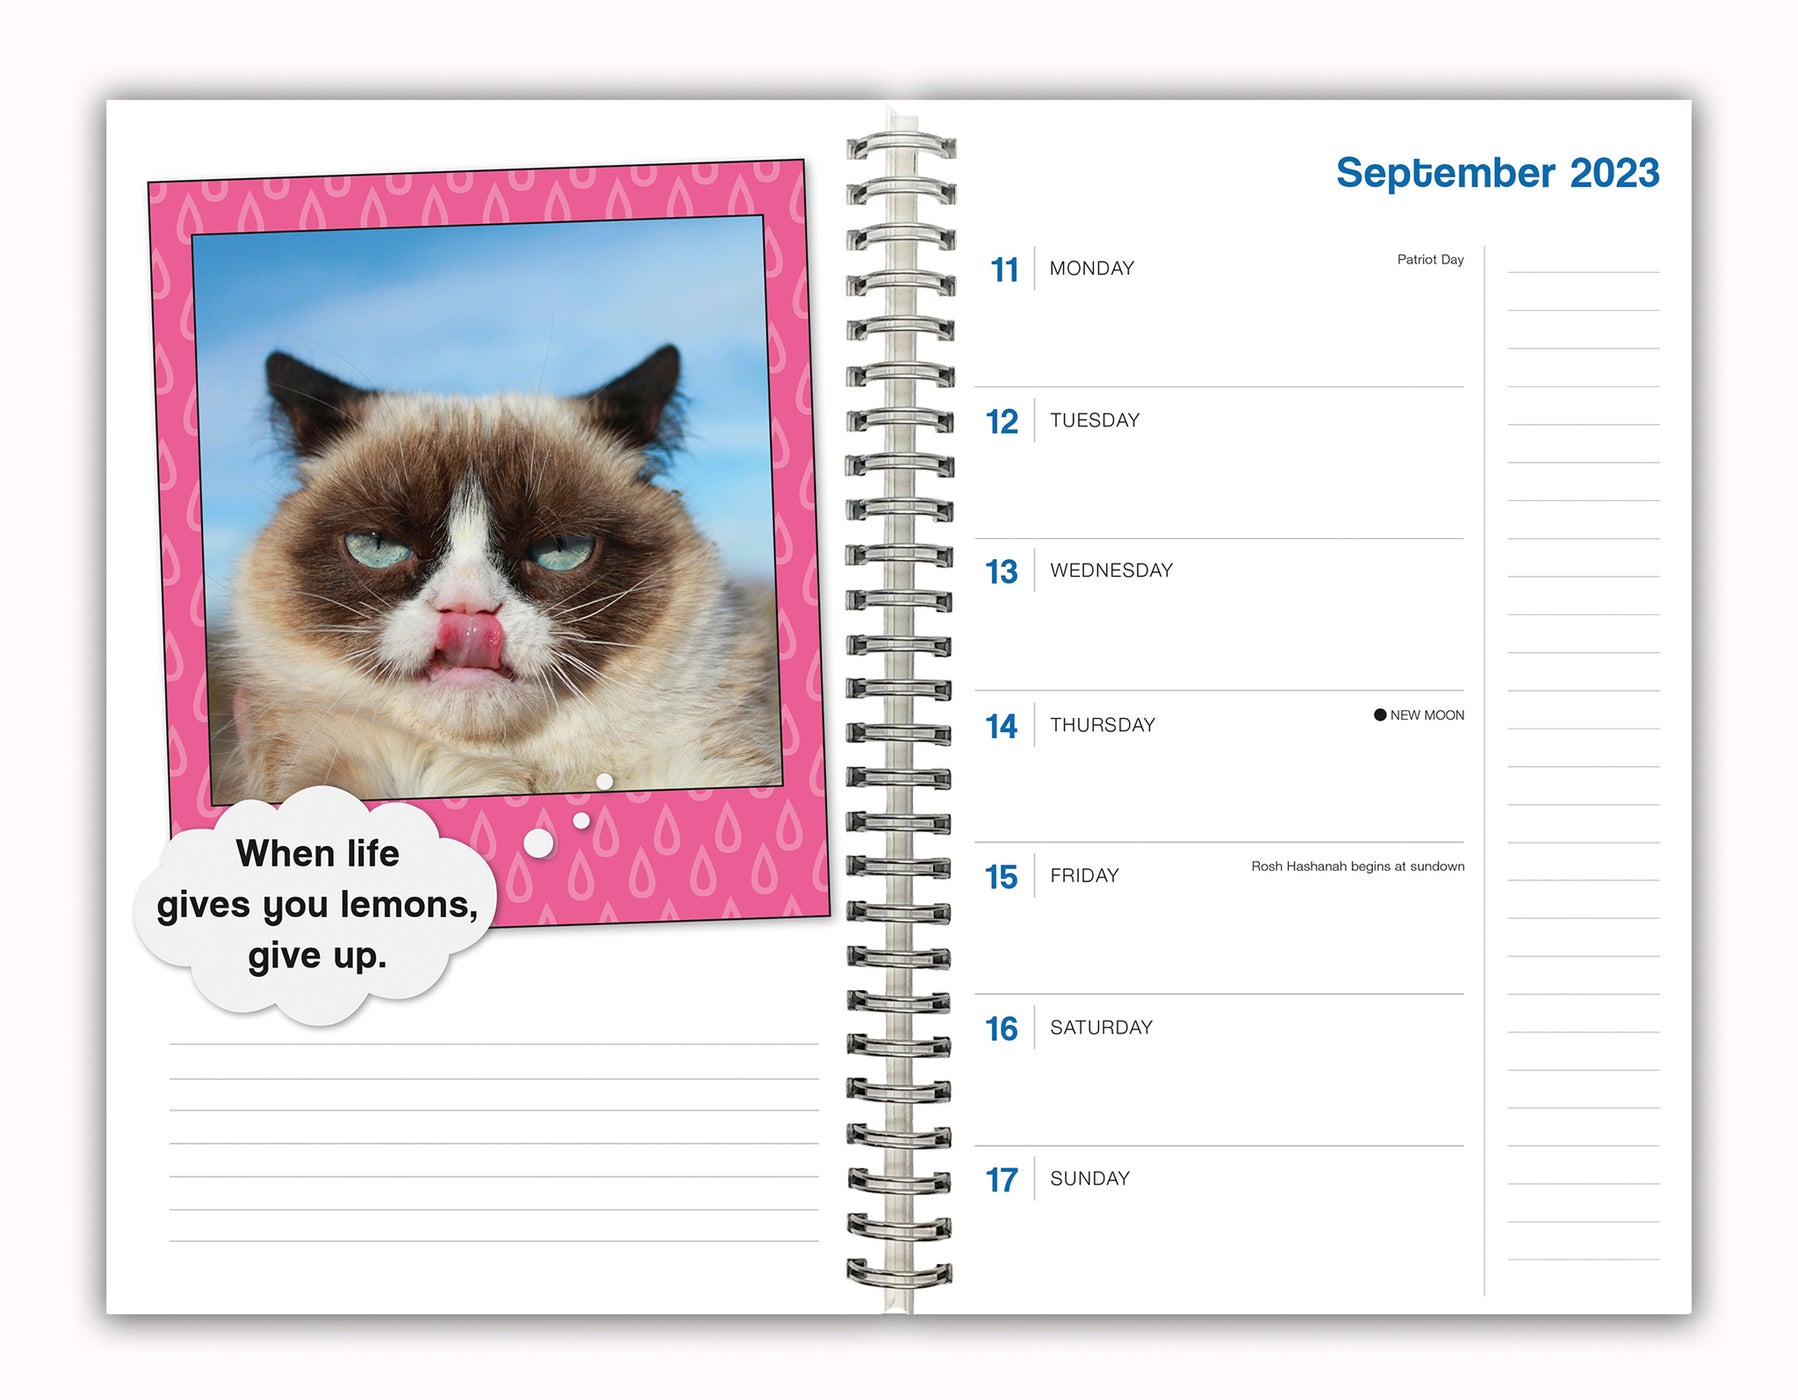 2024 Grumpy Cat Diary — Calendar Club